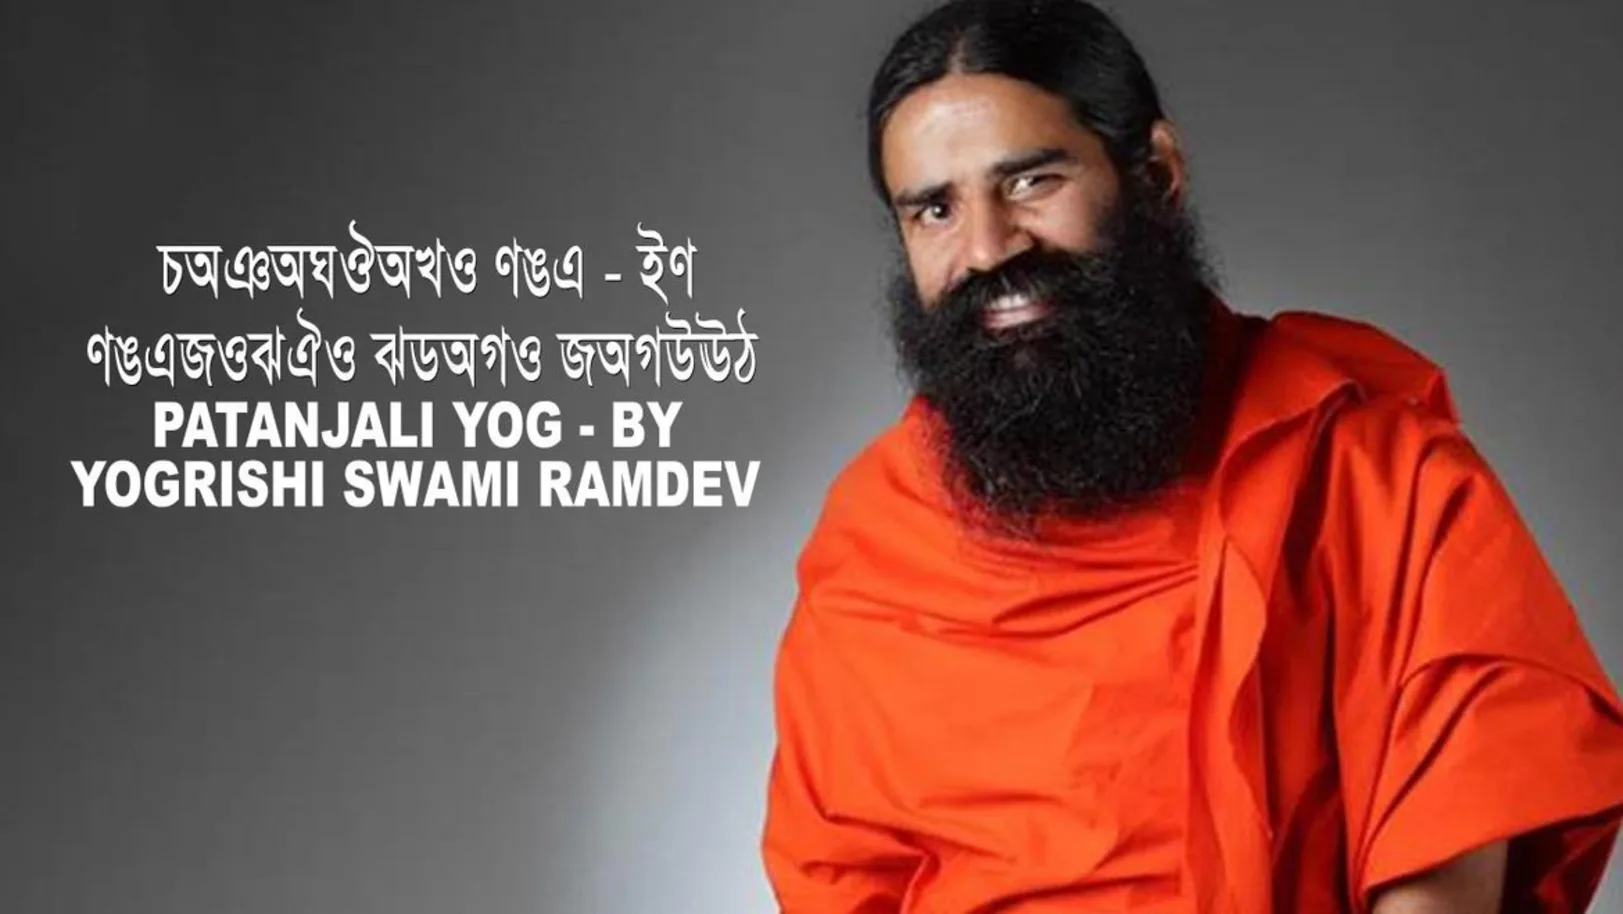 Patanjali Yog - By Yogrishi Swami Ramdev Streaming Now On Zee Bangla